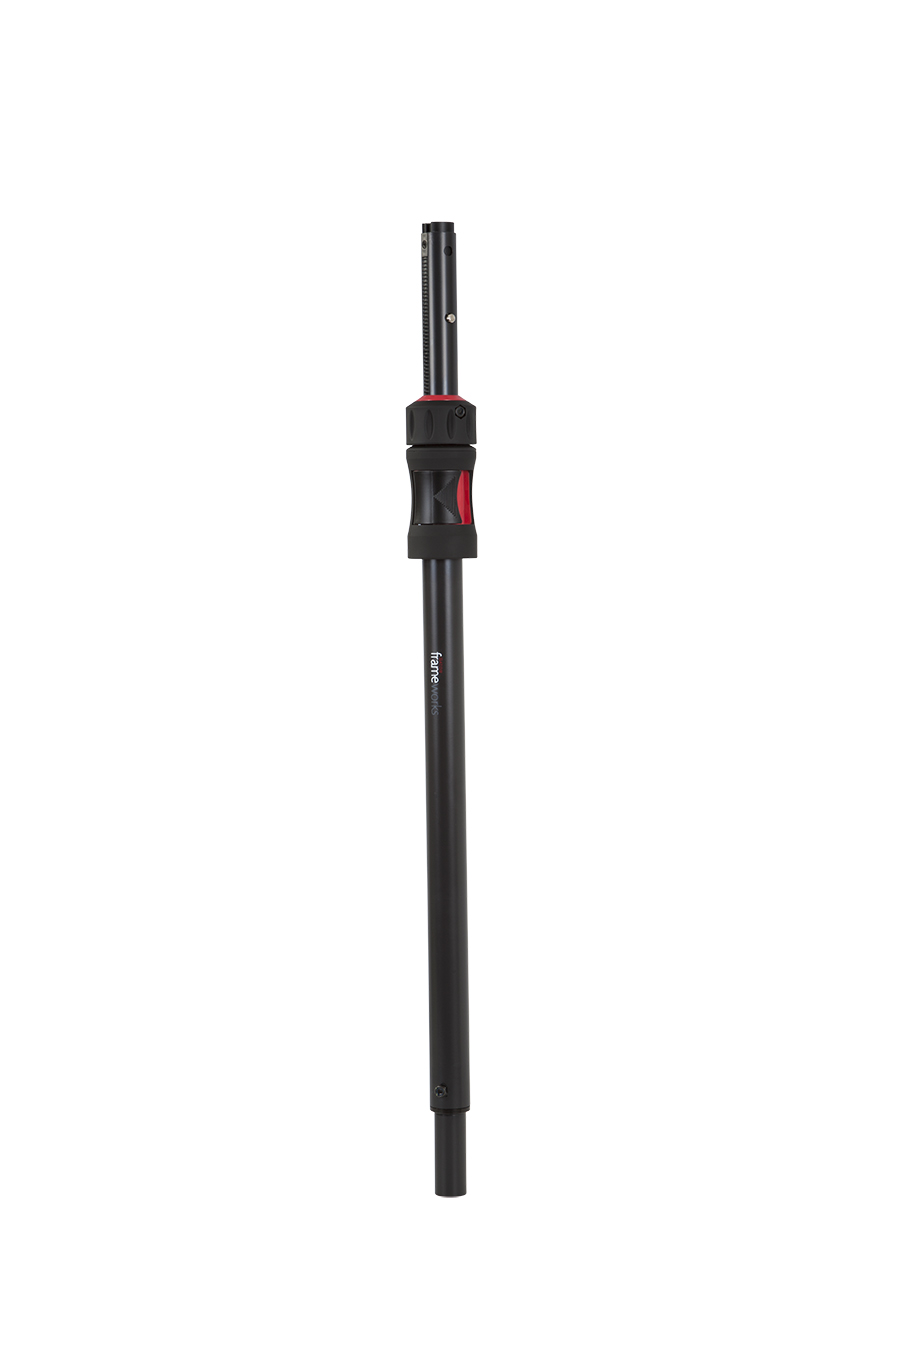 ID Series Speaker Sub Pole-GFW-ID-SPKR-SP